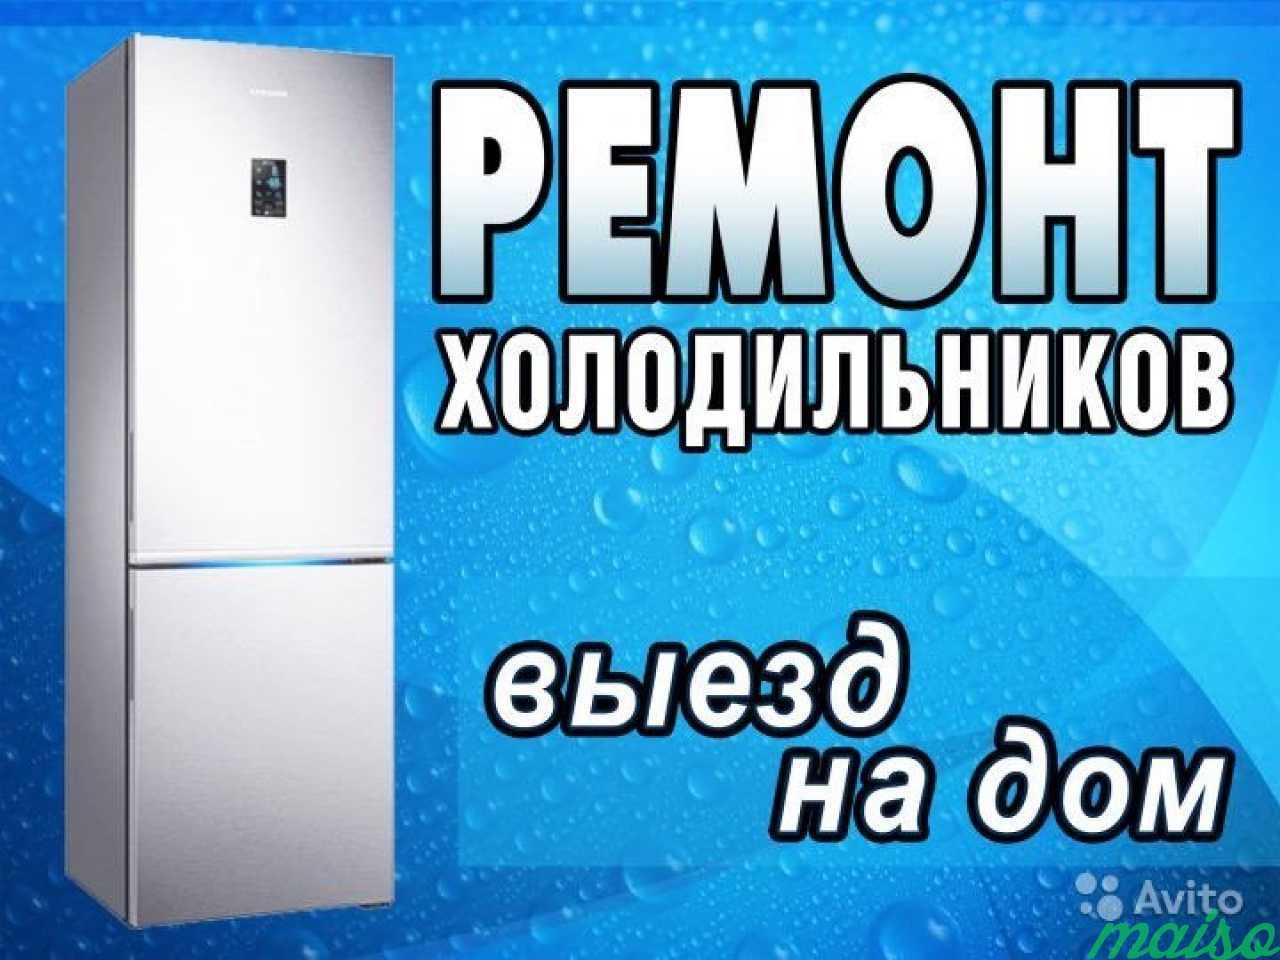 Номер телефона ремонта холодильников на дому